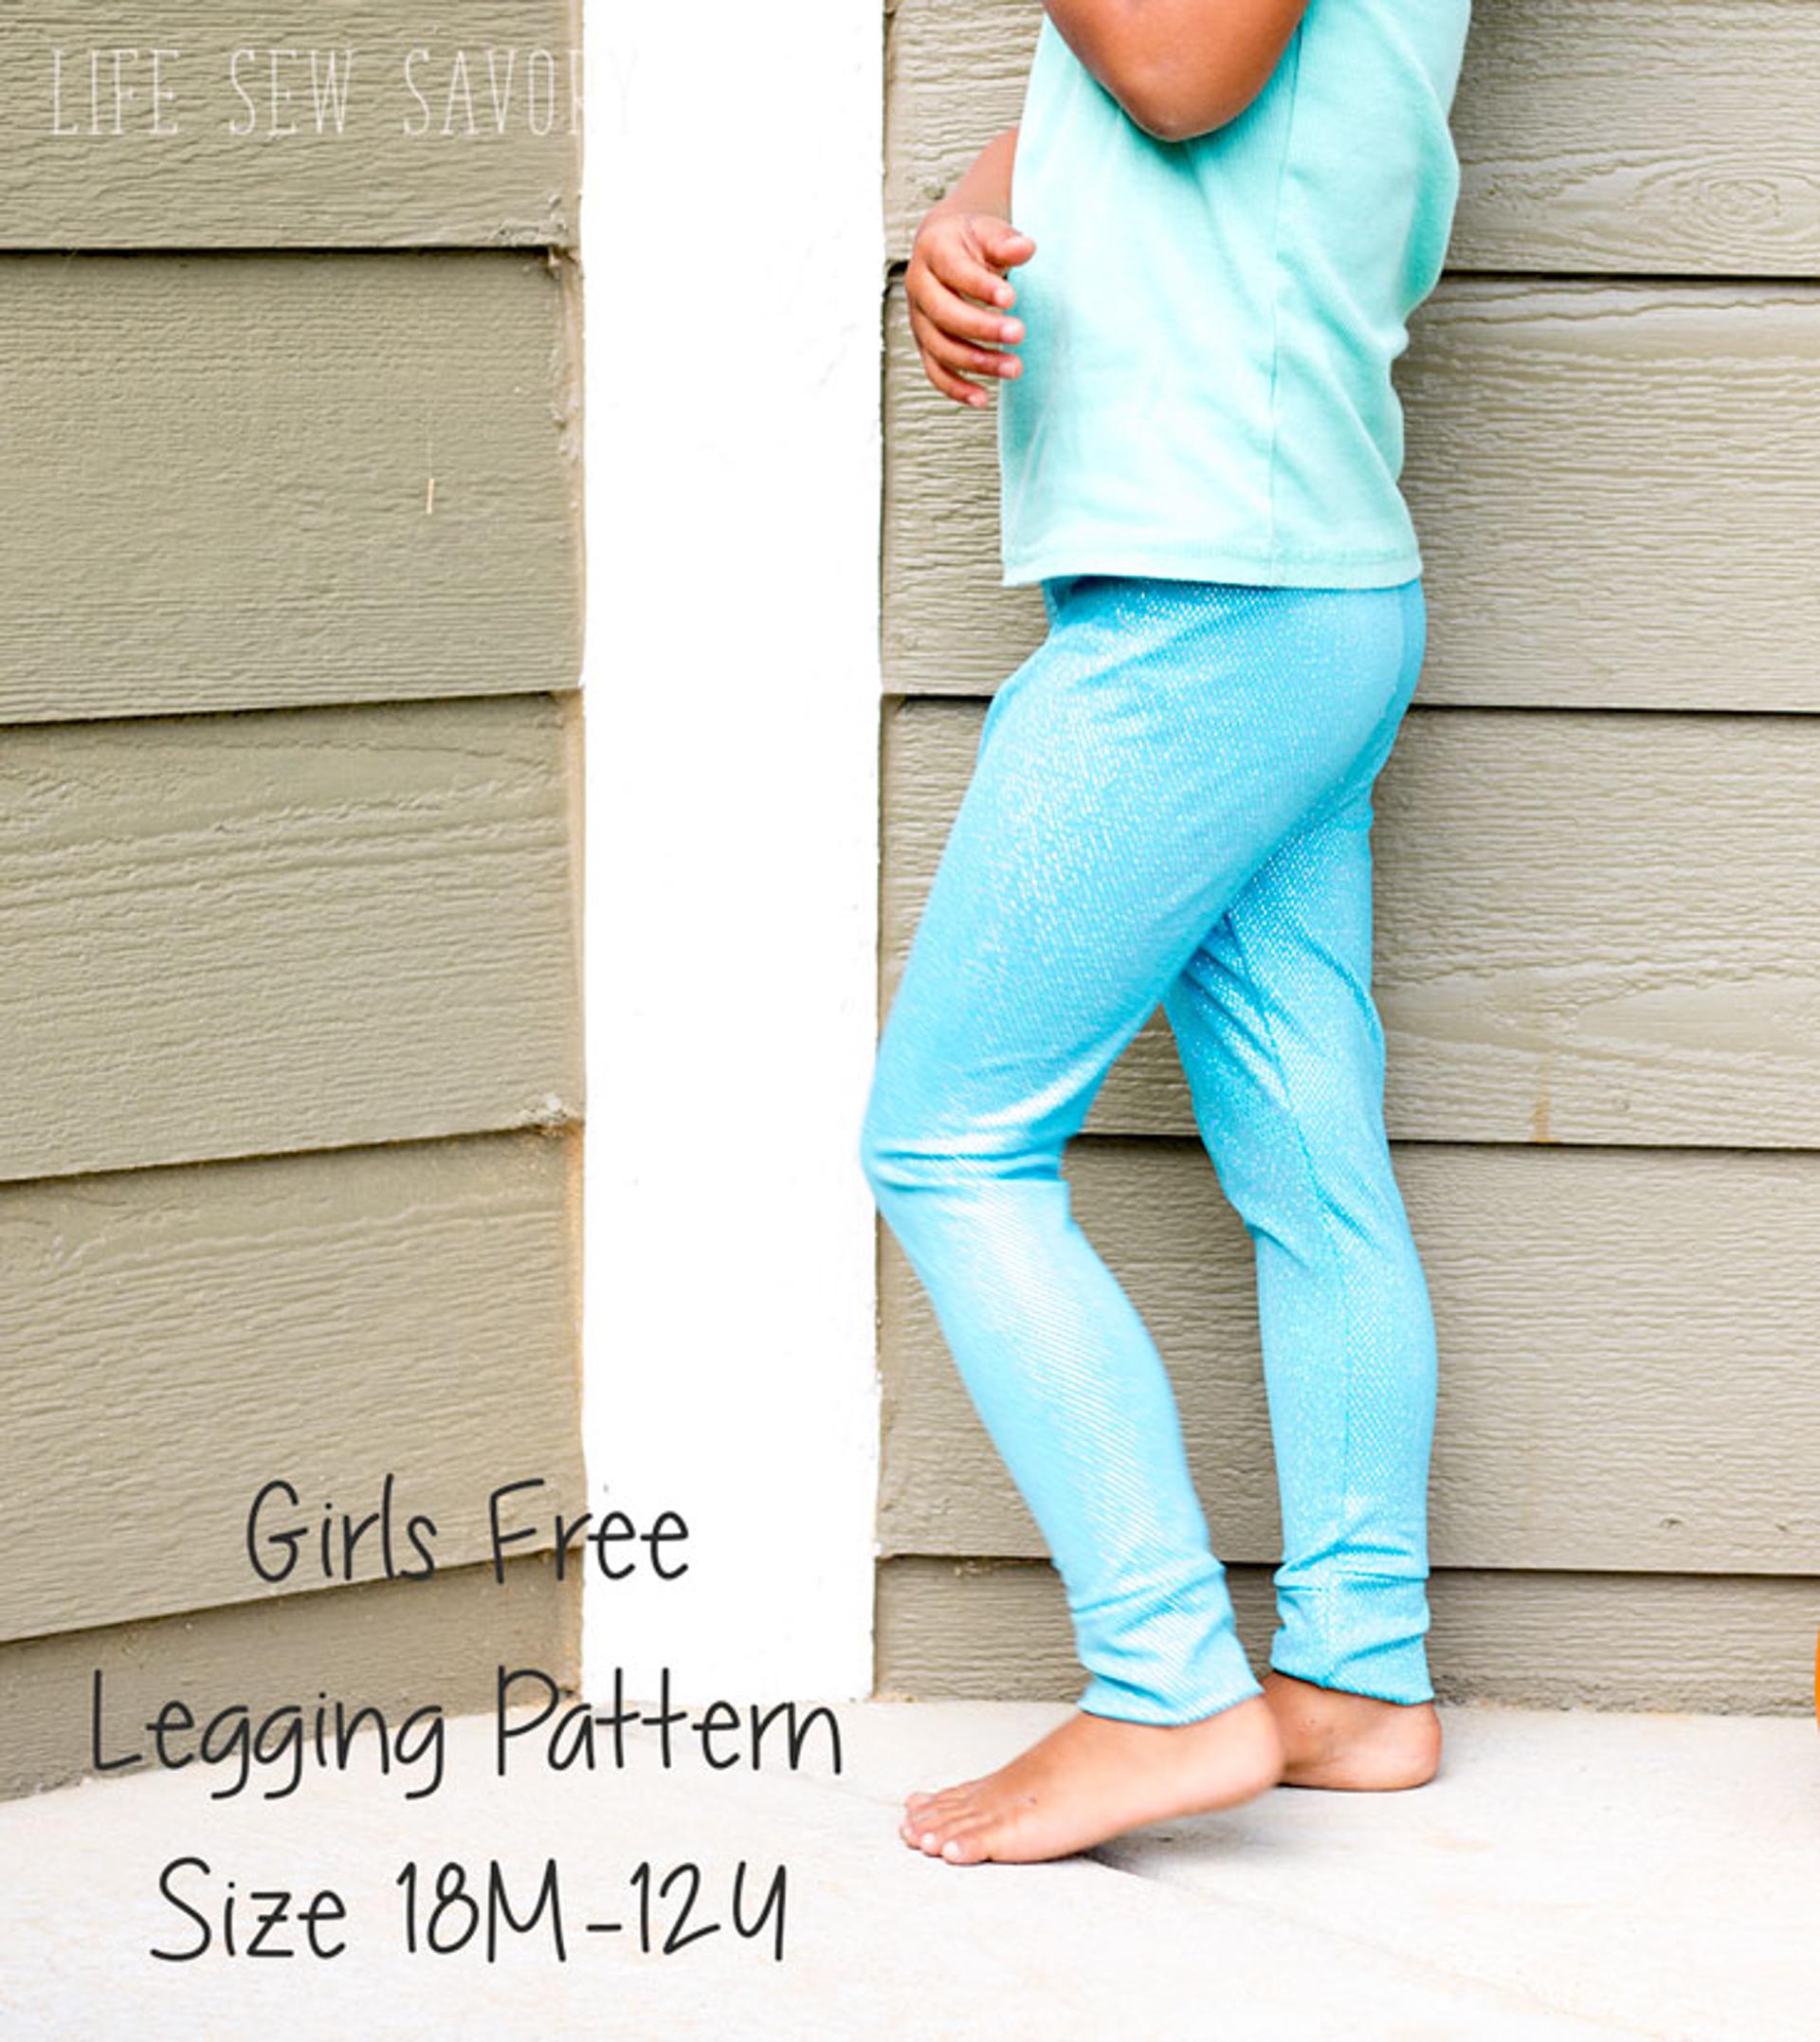 Free Girls Legging Pattern - Life Sew Savory